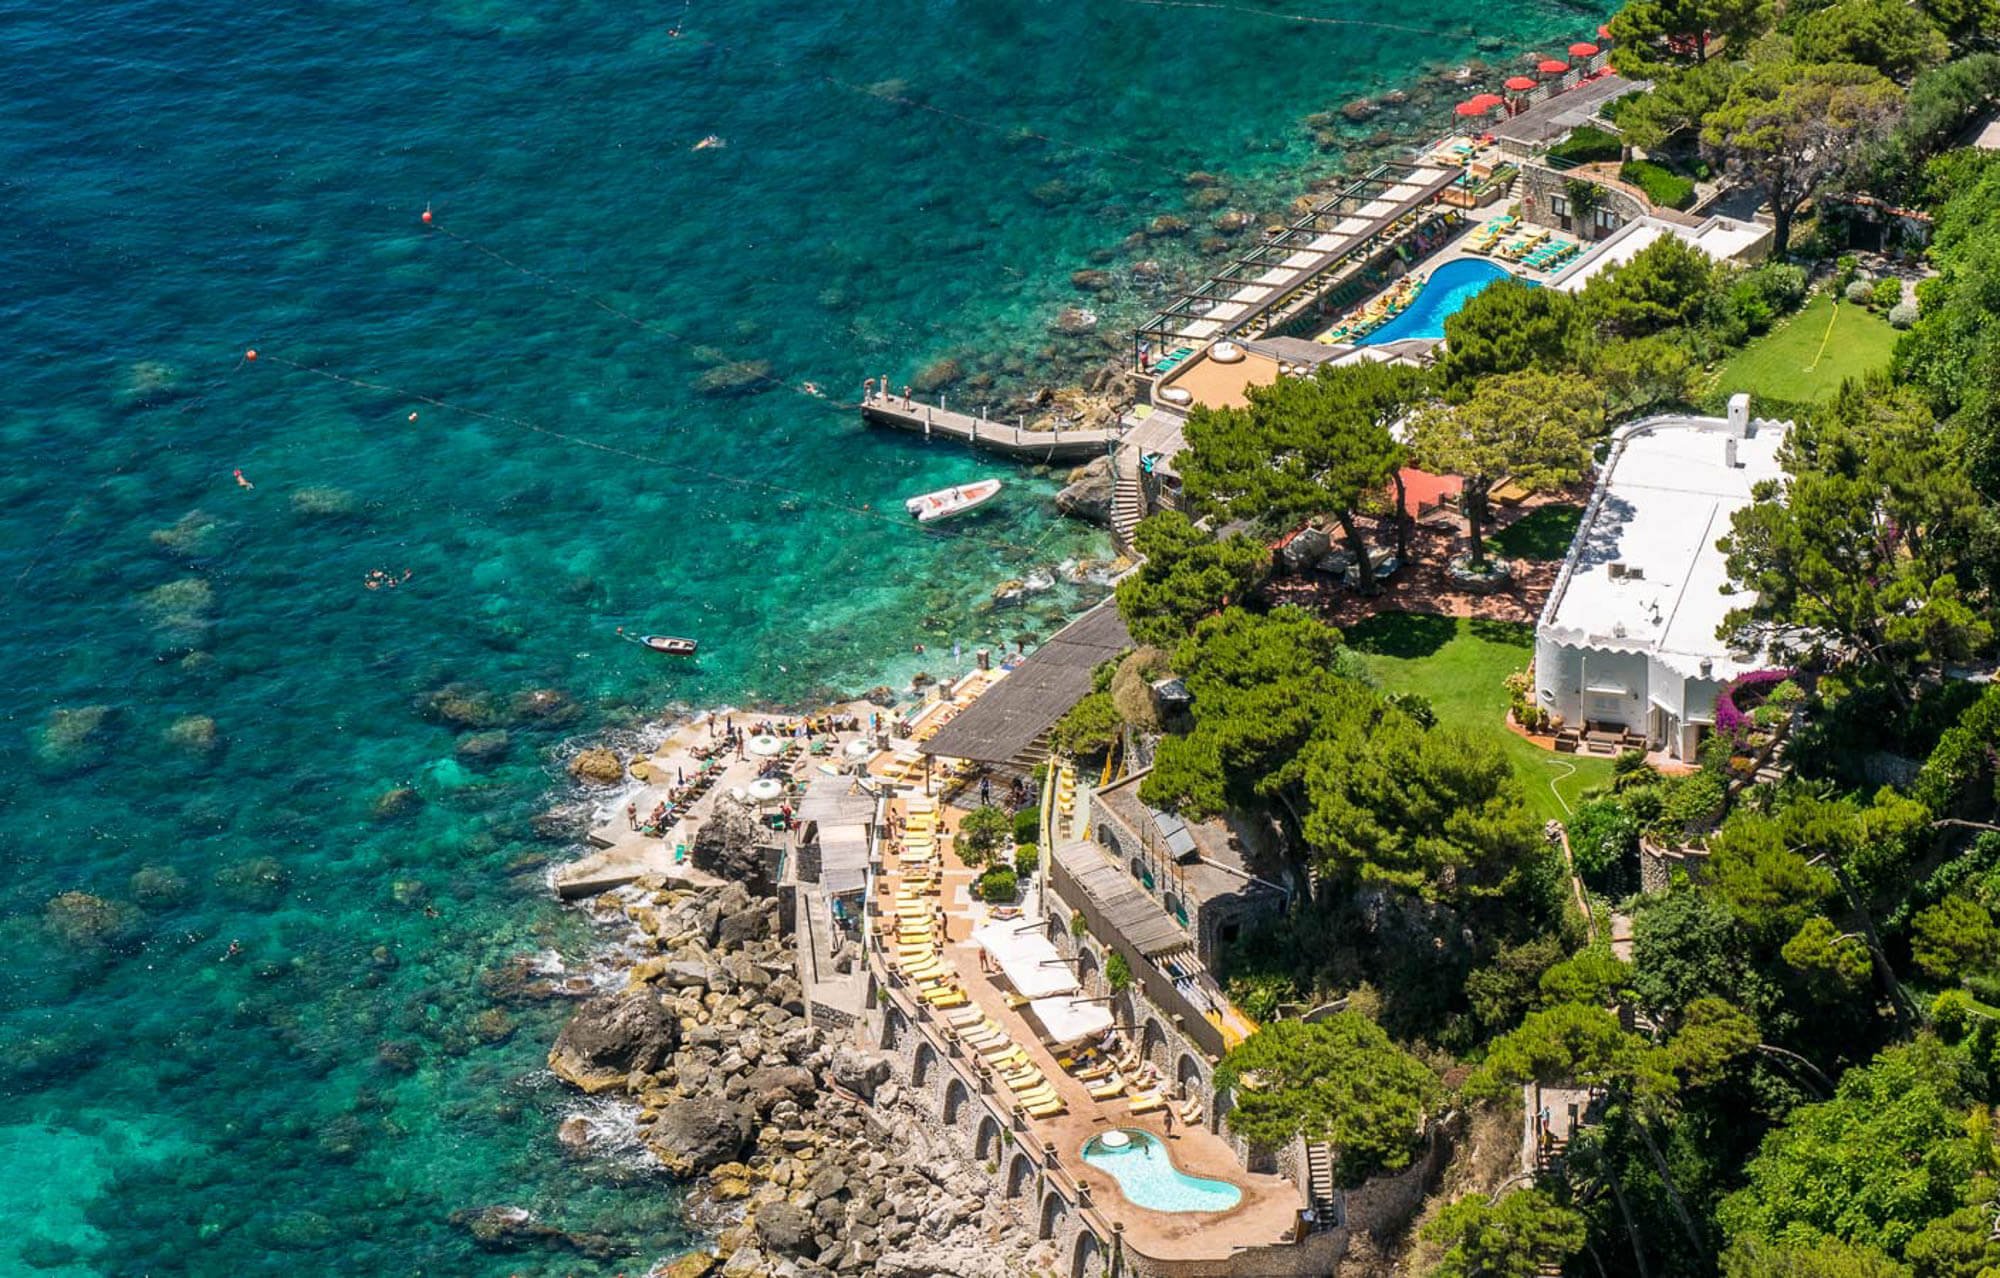 La Canzone del Mare, a Capri beach club, played in a major part in making Capri famous across the world